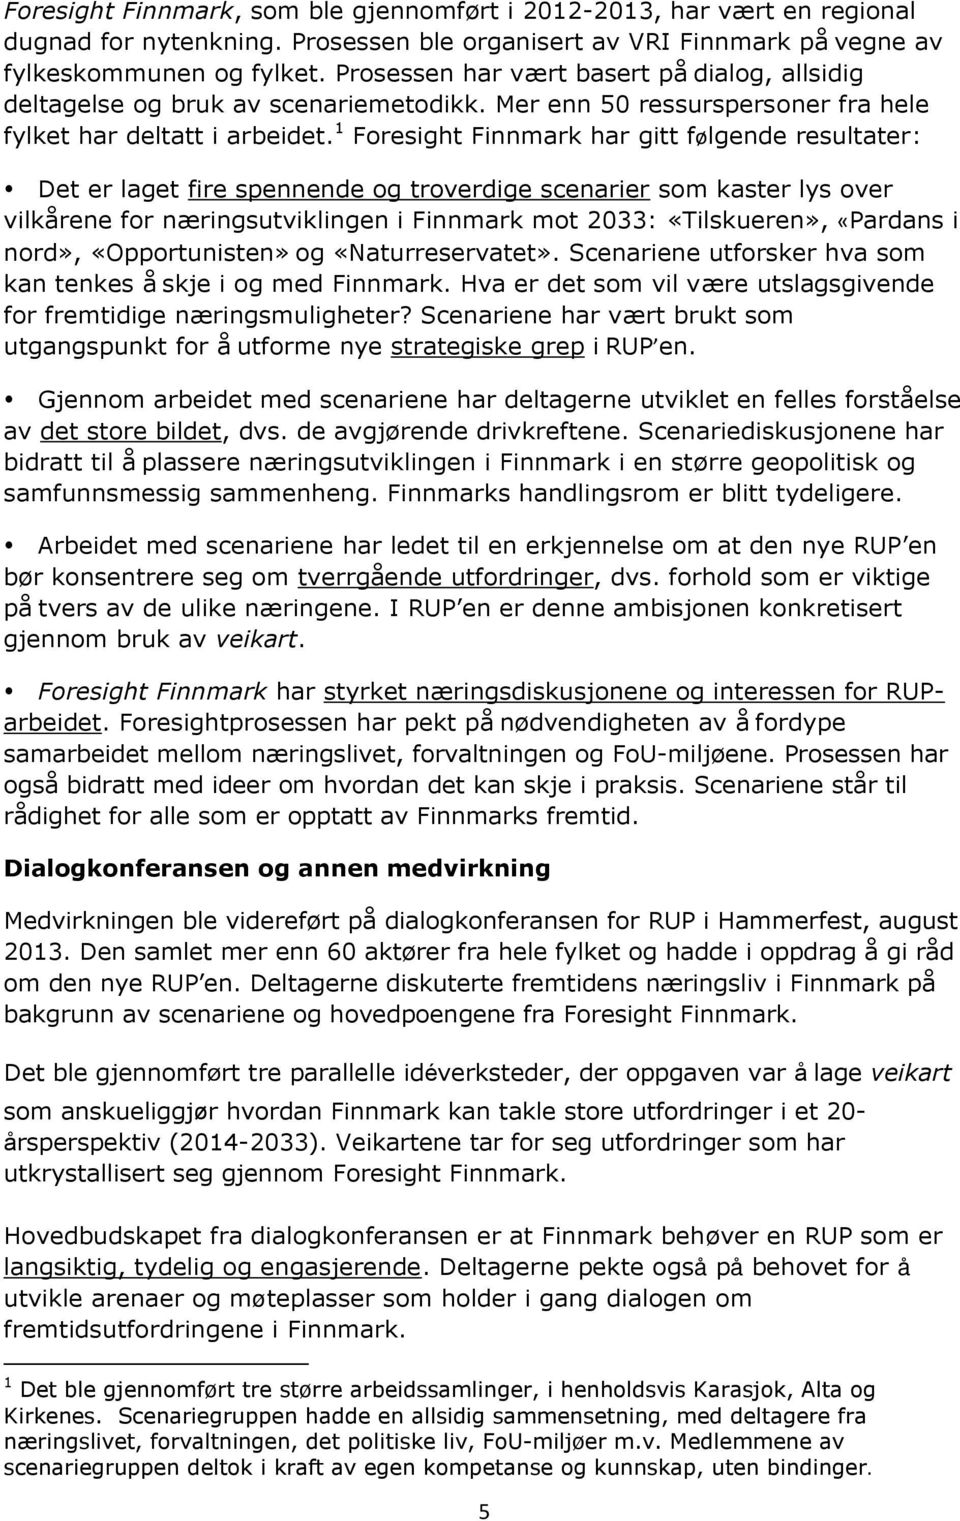 1 Foresight Finnmark har gitt følgende resultater: Det er laget fire spennende og troverdige scenarier som kaster lys over vilkårene for næringsutviklingen i Finnmark mot 2033: «Tilskueren», «Pardans